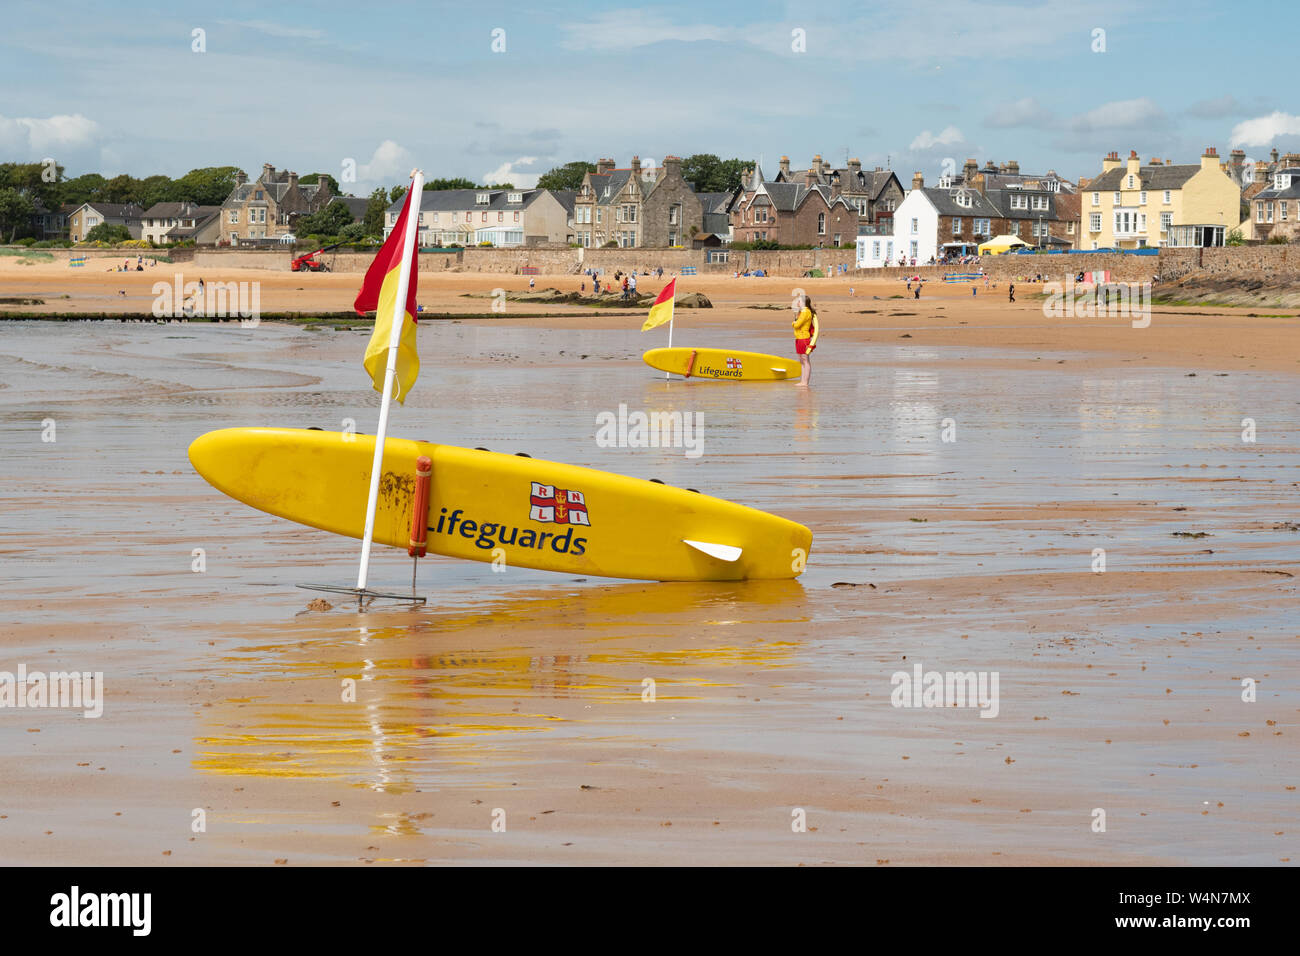 Drapeaux rouge et jaune sur la plage - Elie, Fife, Scotland, UK Banque D'Images